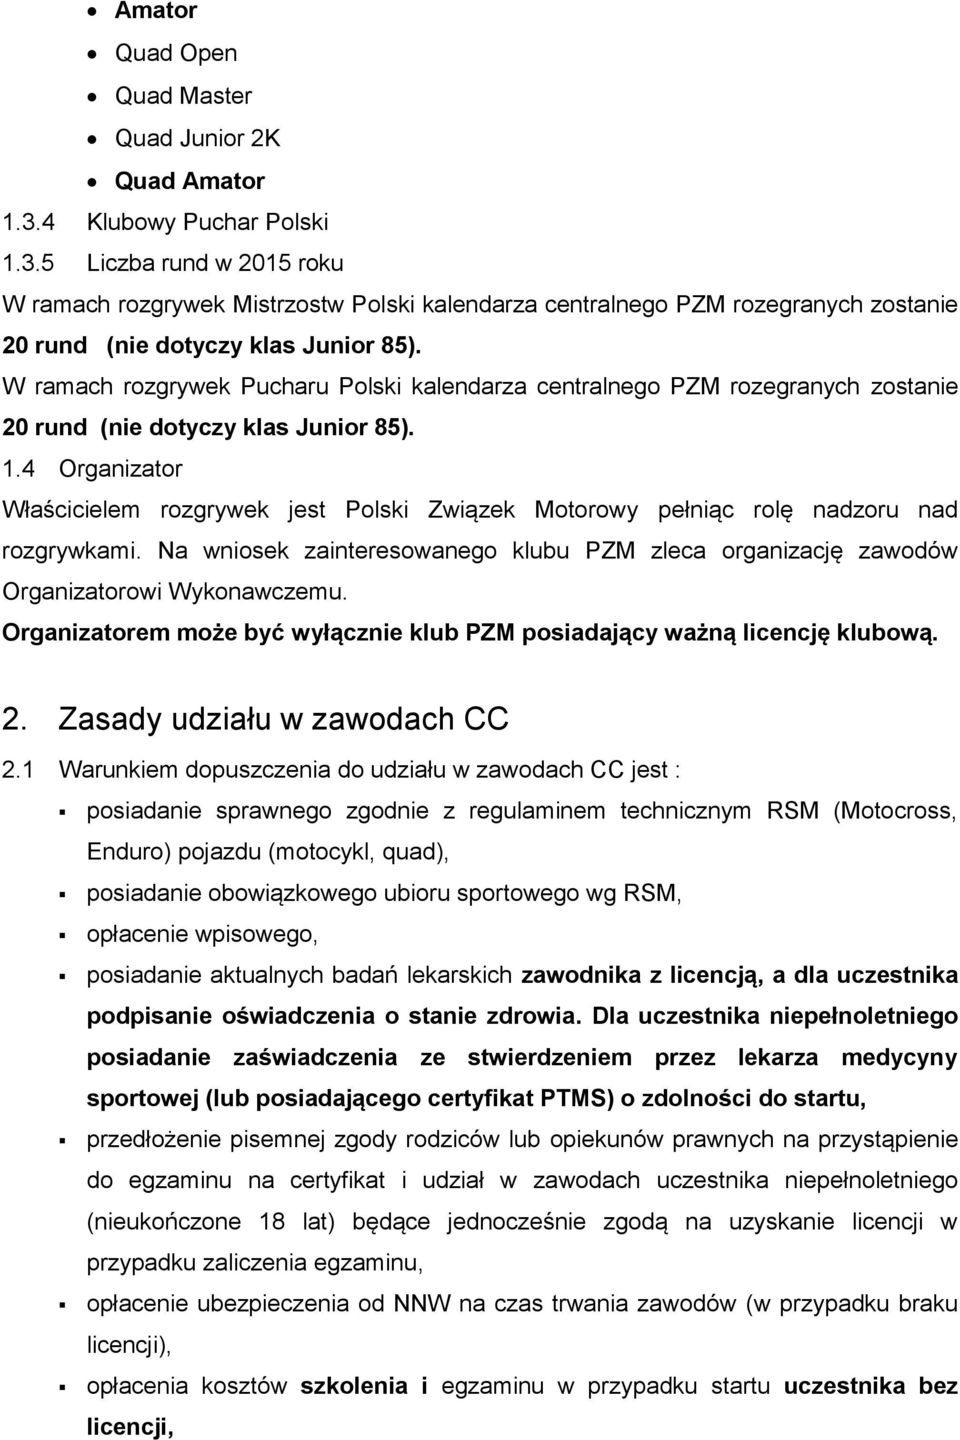 W ramach rozgrywek Pucharu Polski kalendarza centralnego PZM rozegranych zostanie 20 rund (nie dotyczy klas Junior 85). 1.